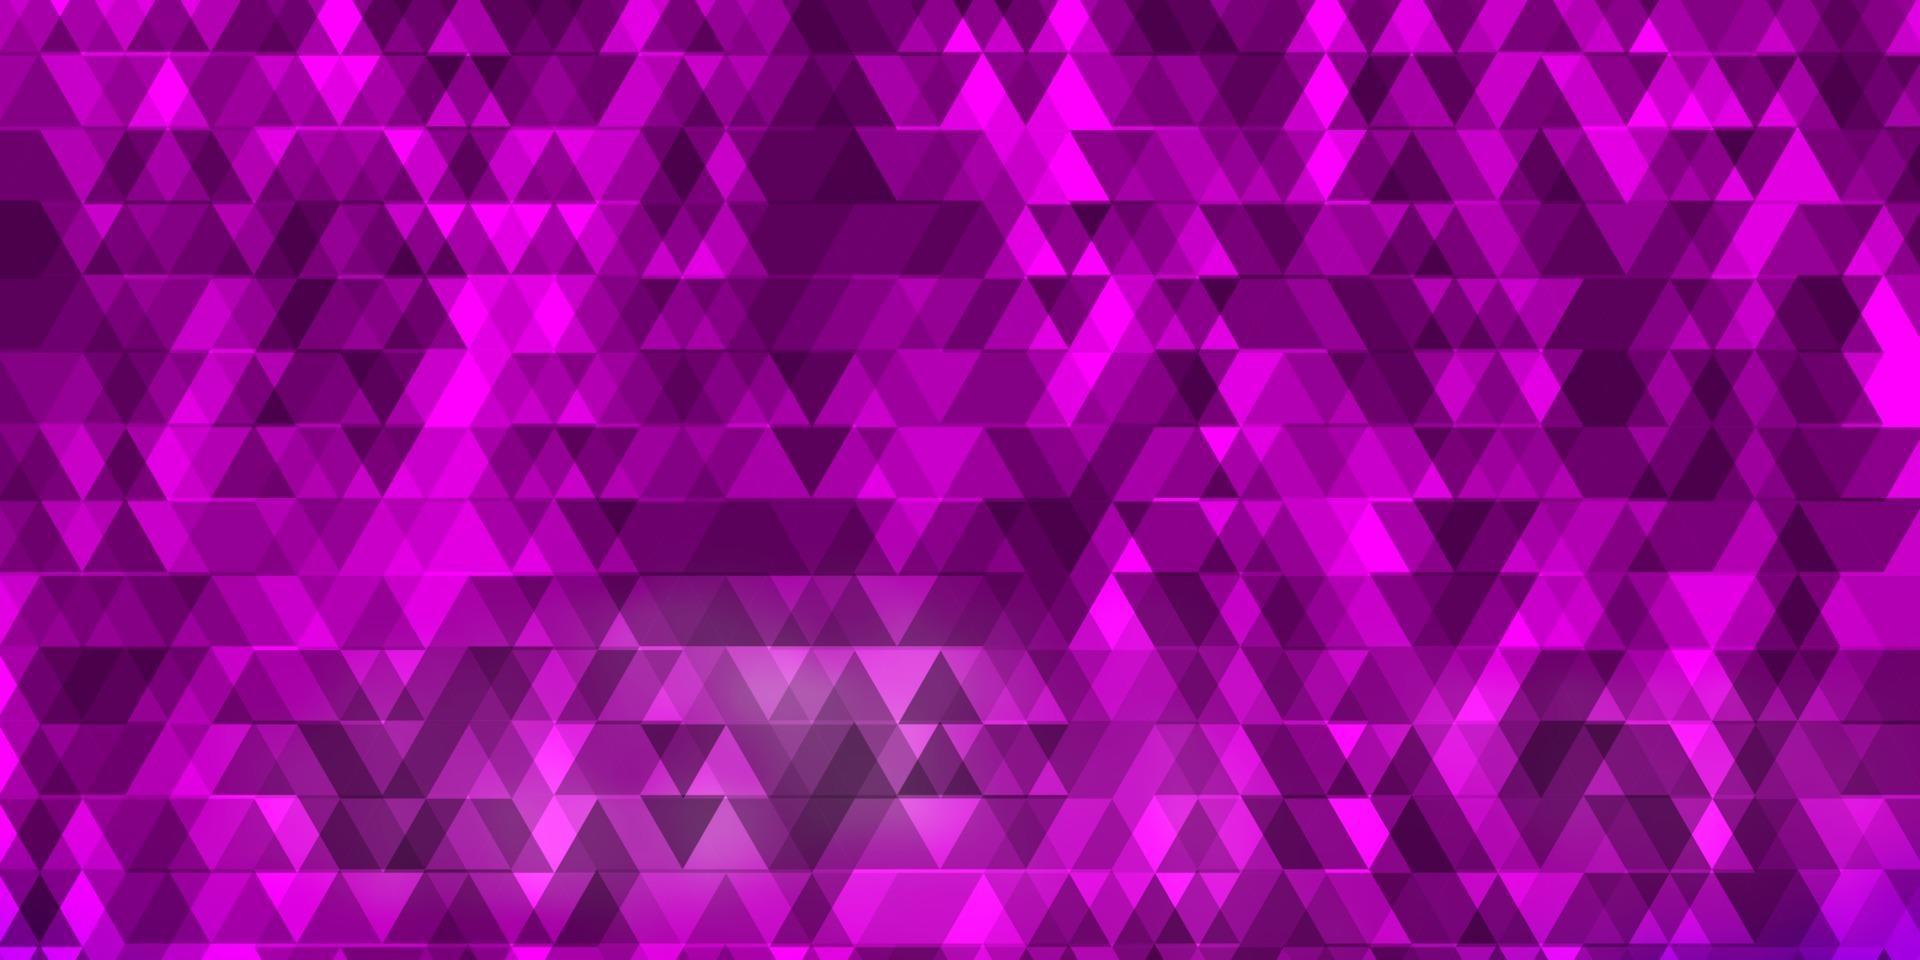 sfondo vettoriale rosa chiaro, blu con linee, triangoli.